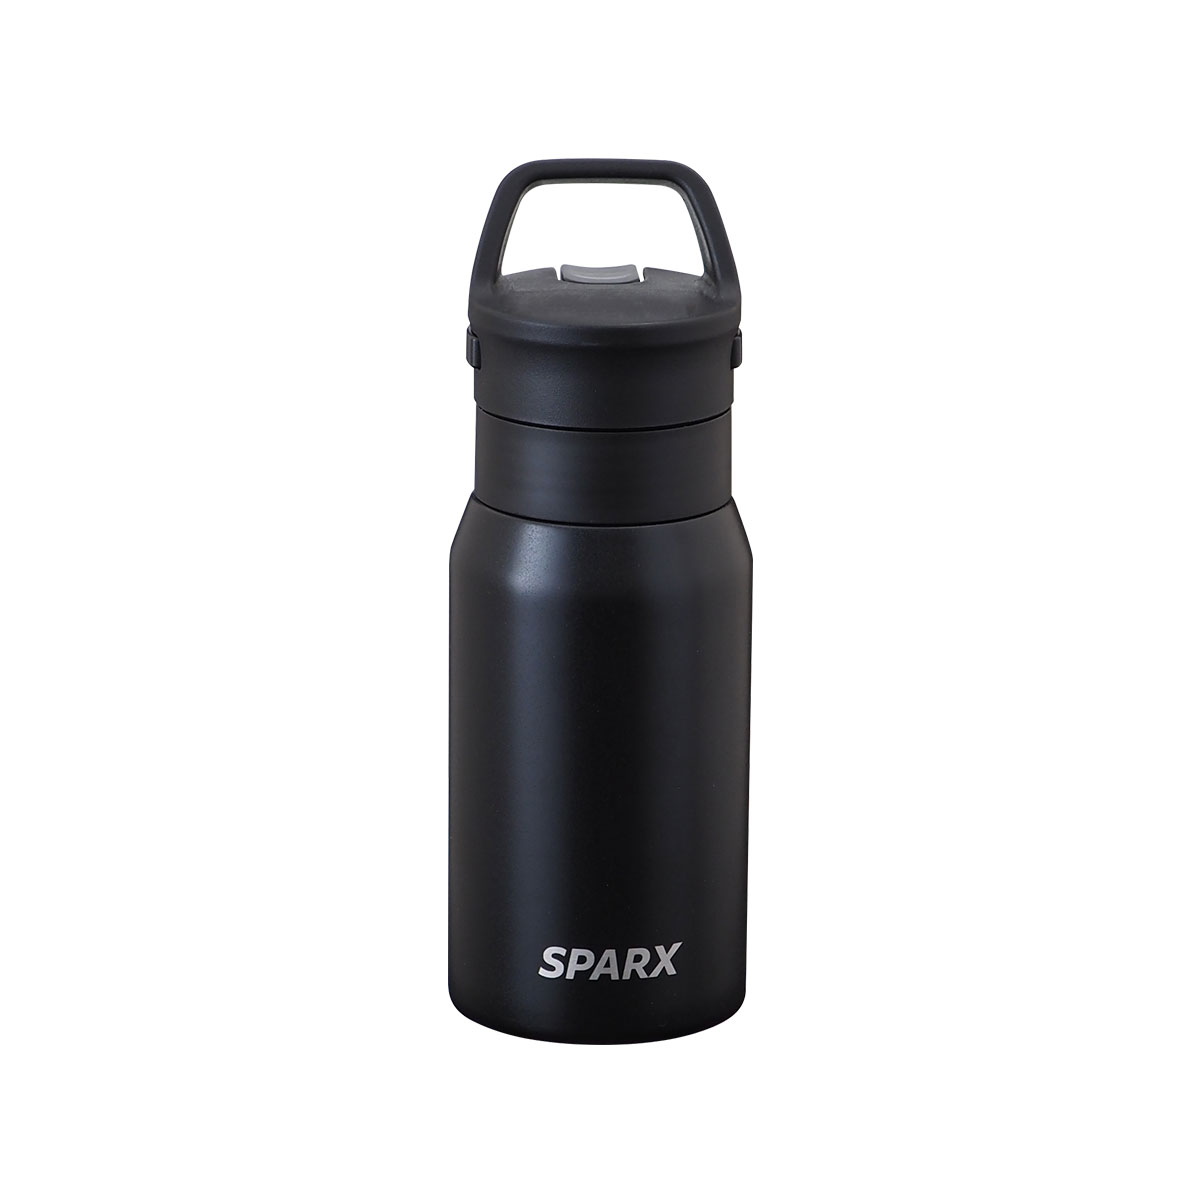 SPARX 真空断熱炭酸用ボトル 370ml ブラックのサムネイル